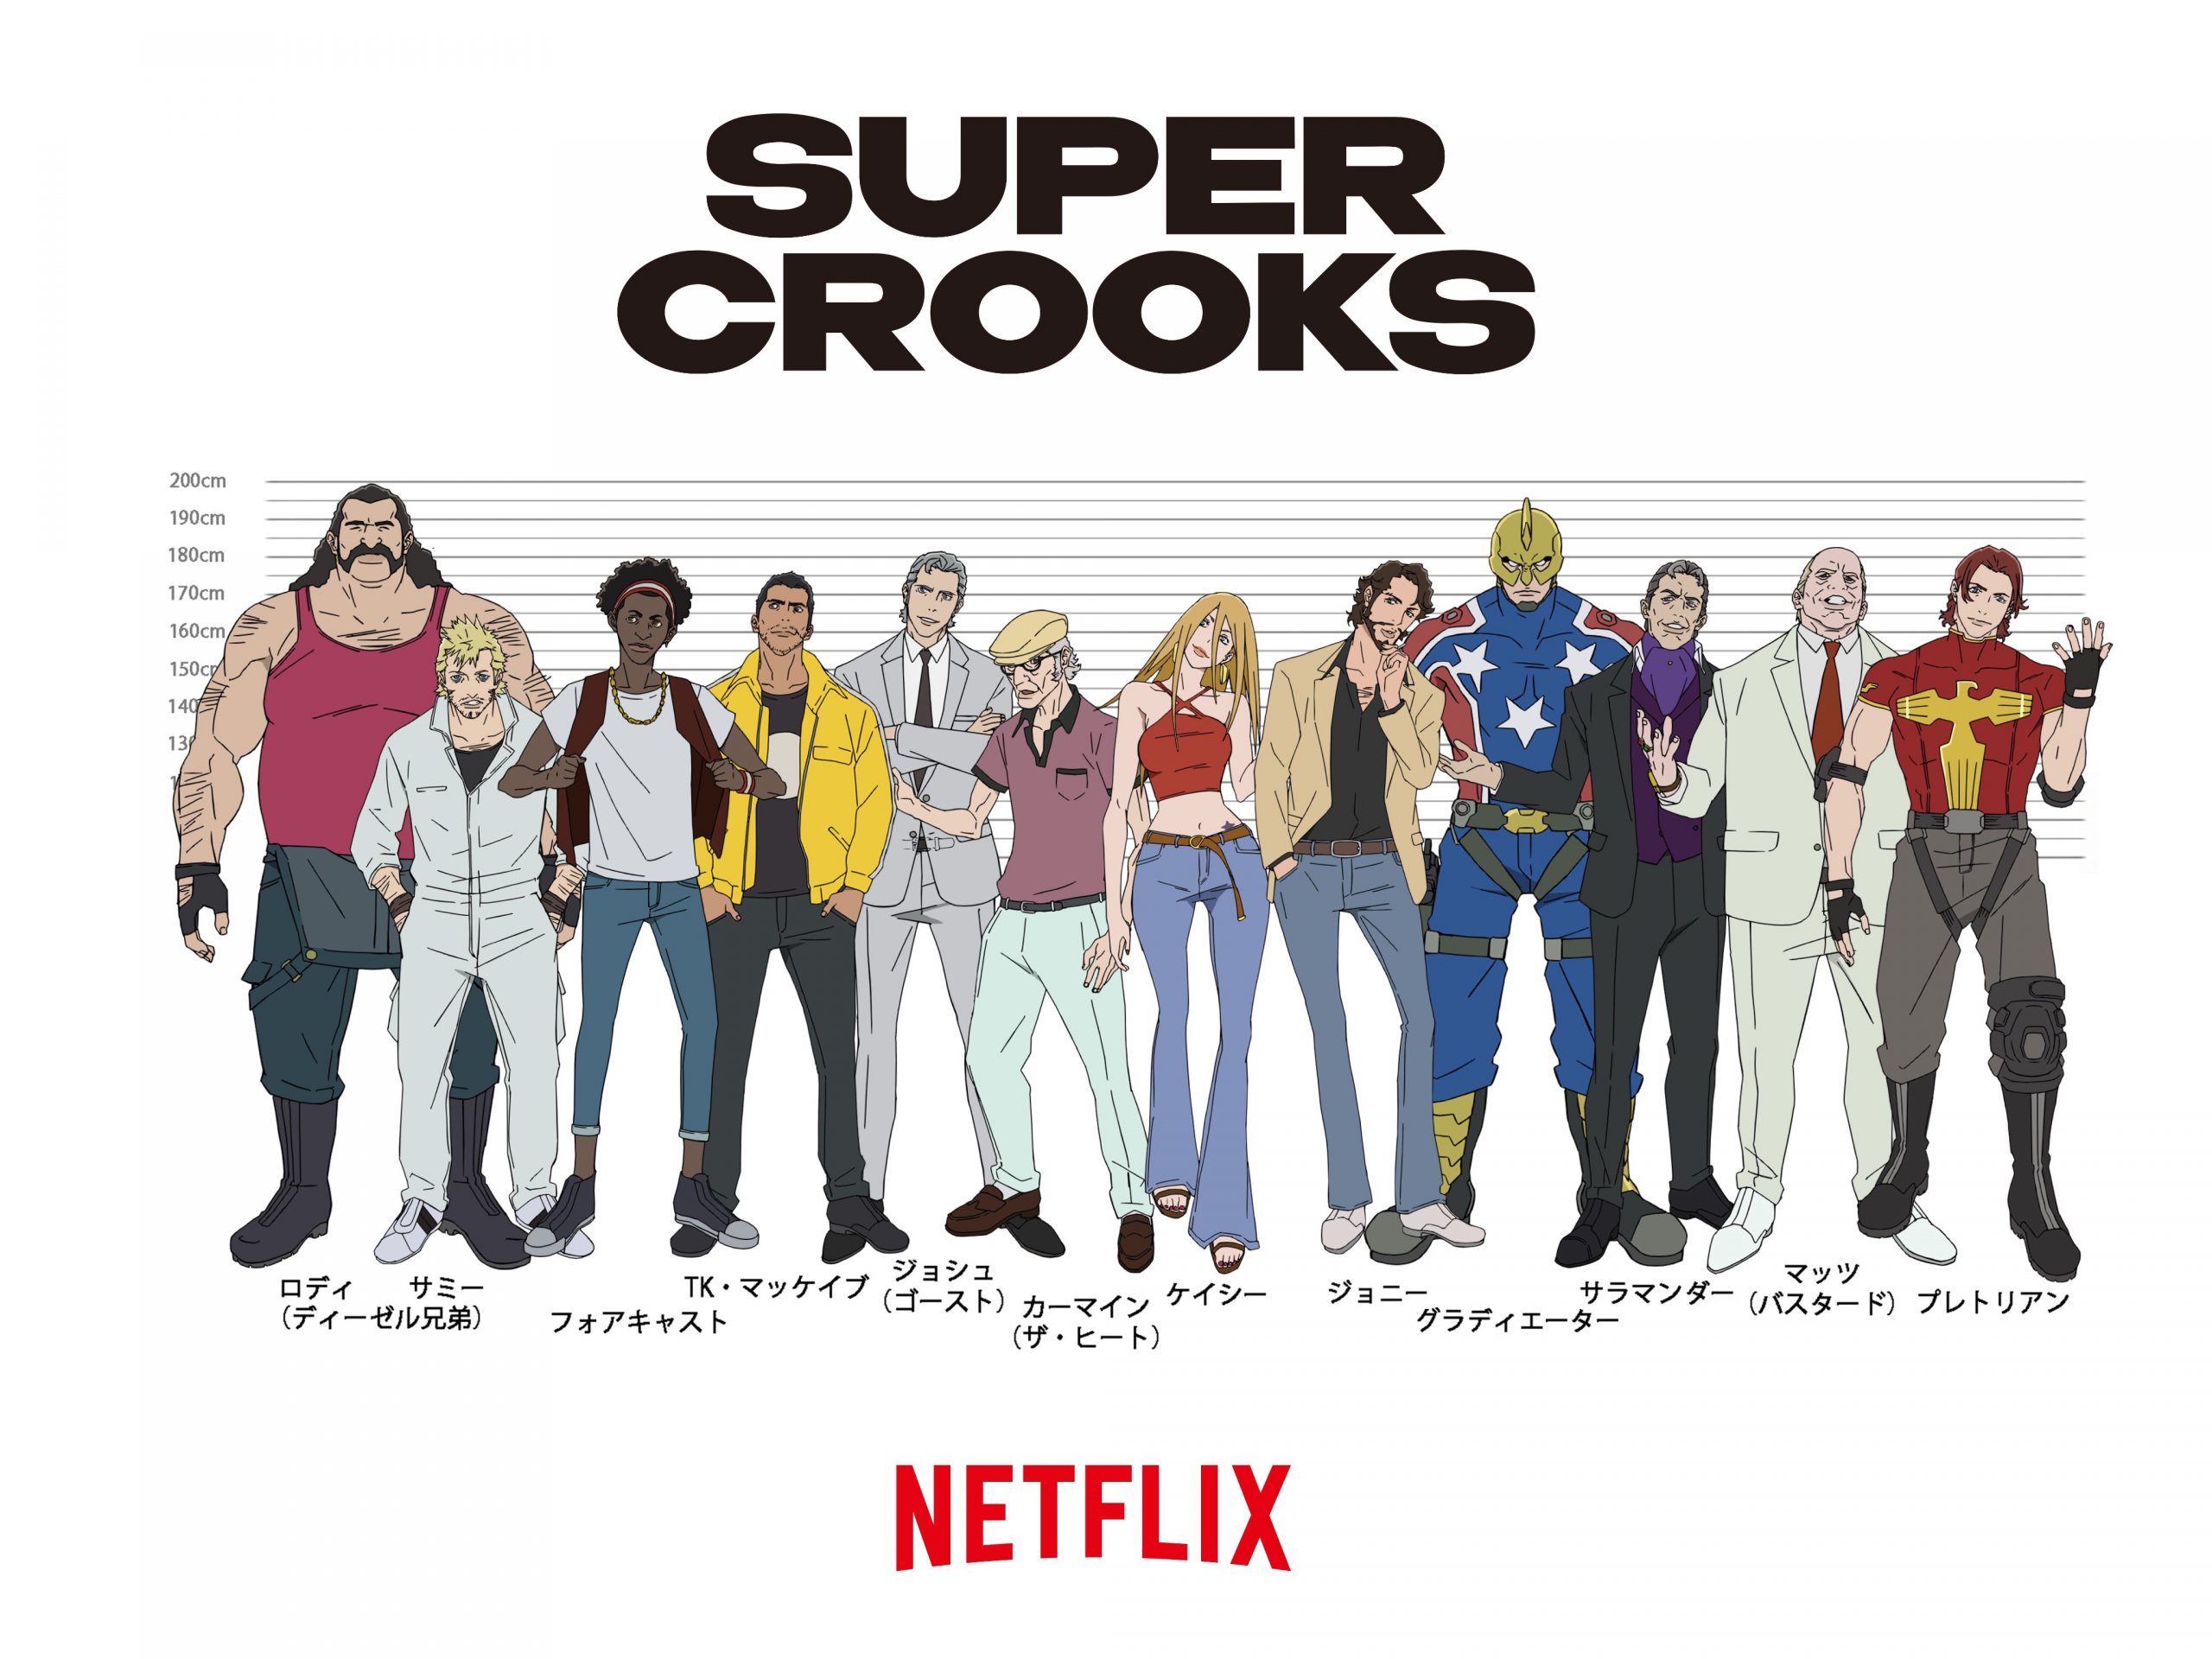 Super Crooks er en kommende Netflix anime fra Bones og instruktøren af Carole & Tuesday